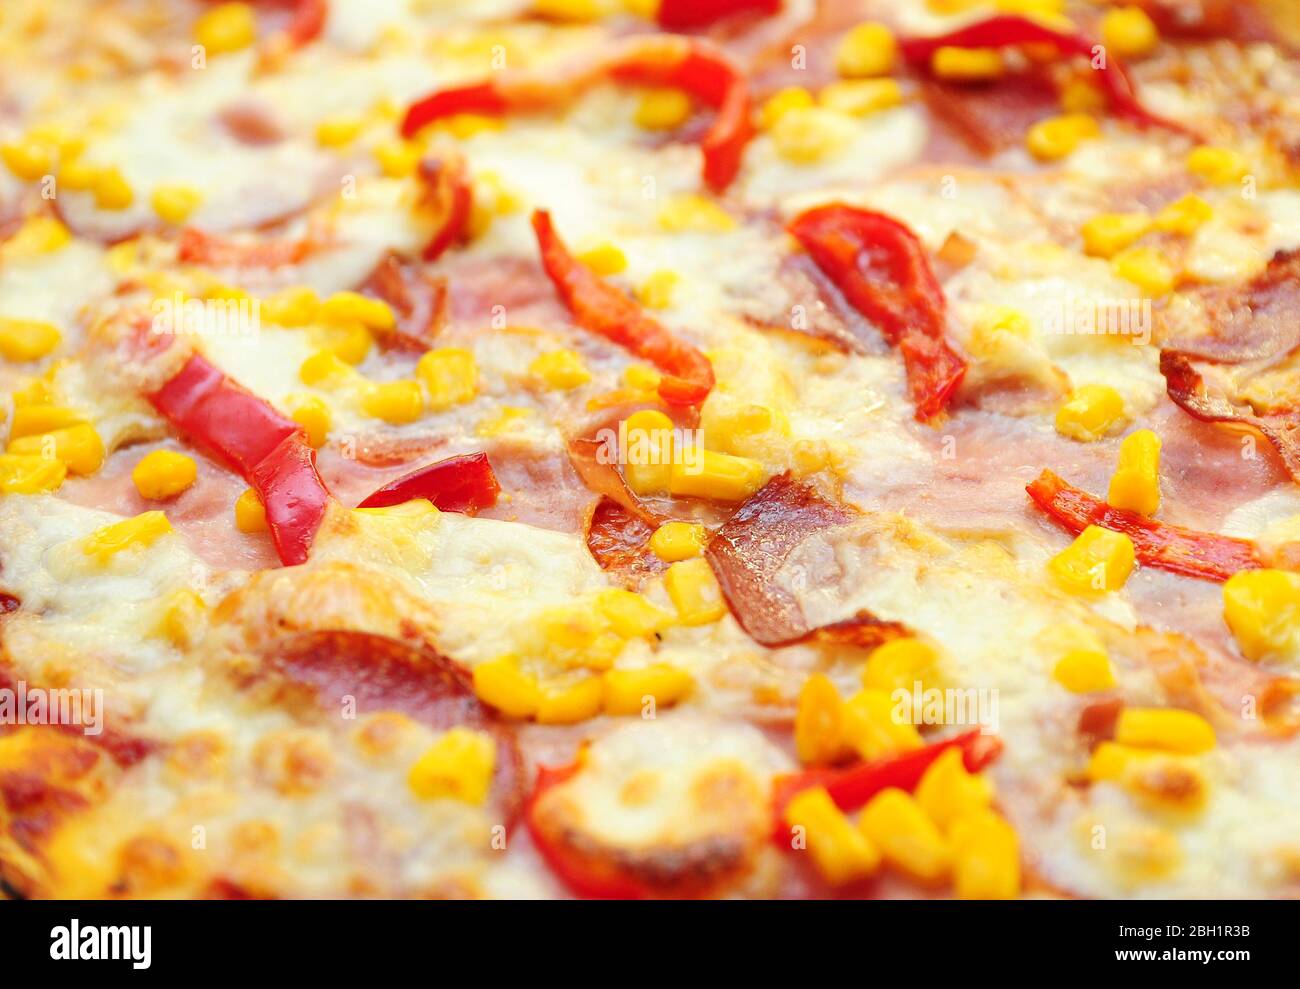 Une surface de pizza de plus près avec du jambon, du salami, du fromage et du poivre rouge. Photo de fond plein format de pizza, sélective concentrée au premier plan. Banque D'Images